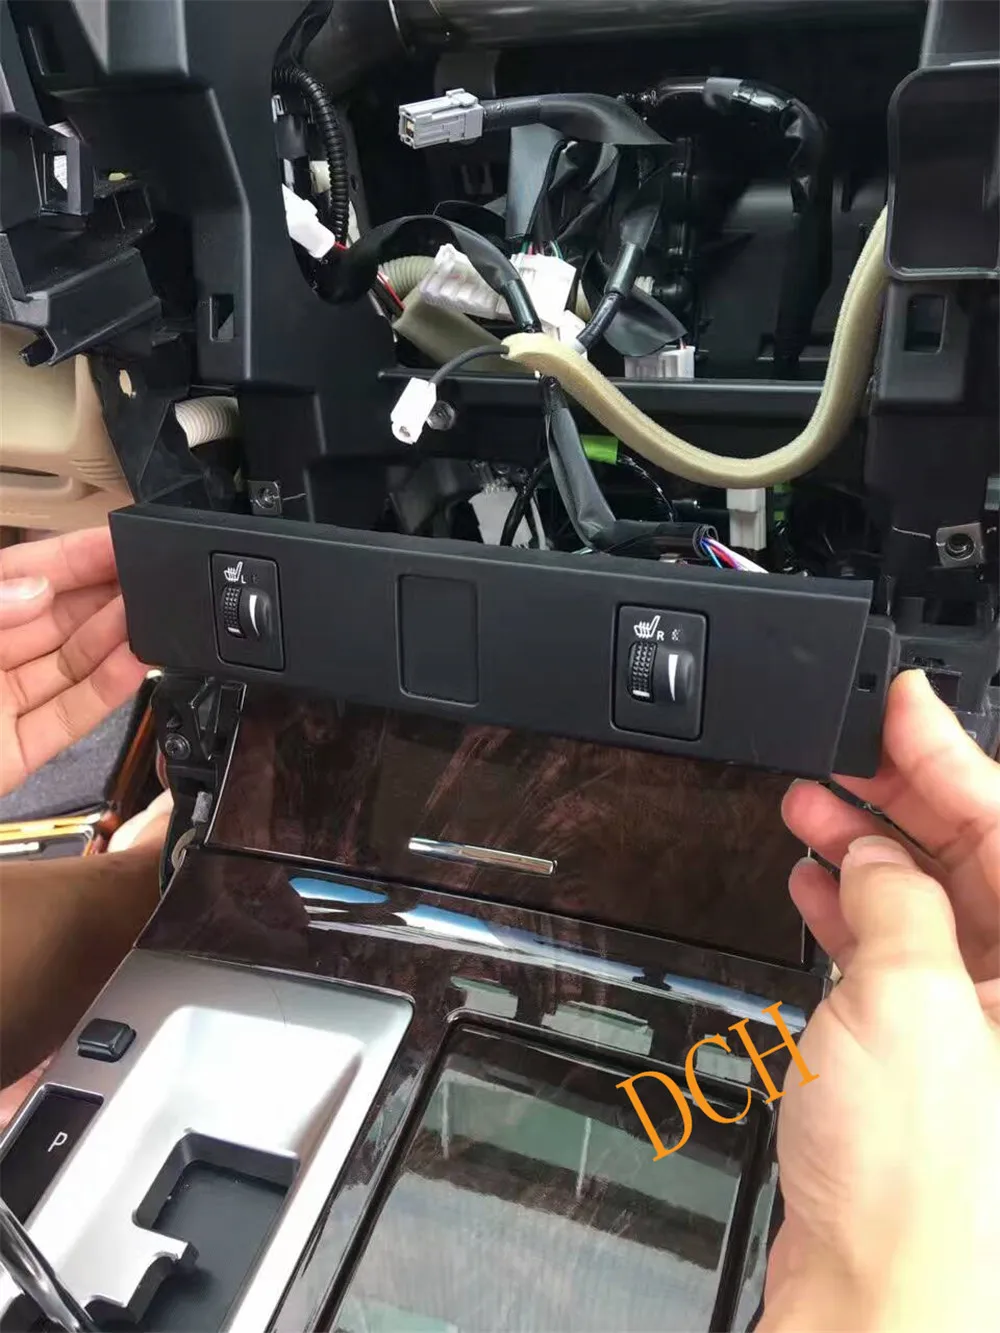 12,1 ''вертикальный tesla стиль Android 8,1 автомобильный dvd-плеер gps навигация радио для Toyota Camry 2012- 4G ram PX6 6 ядер